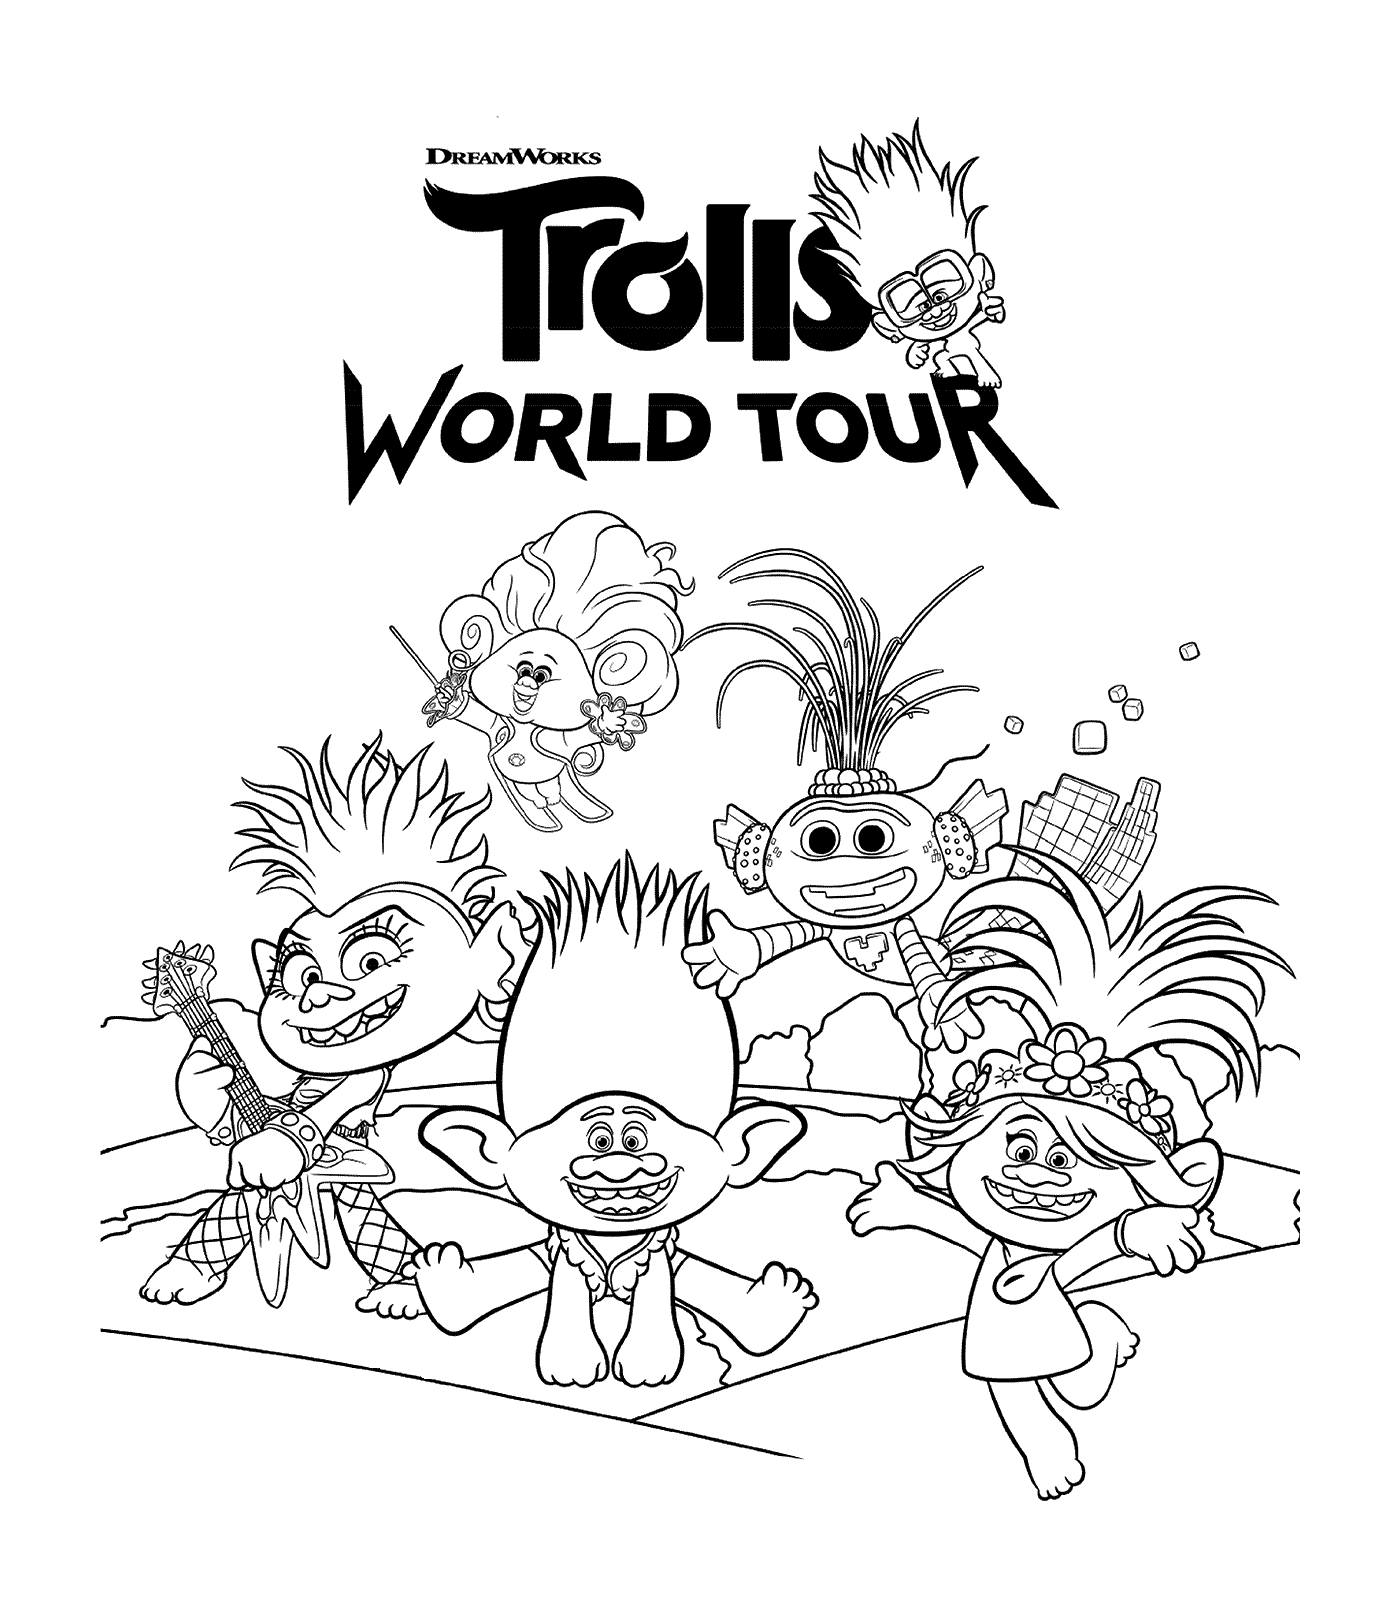  Trolls trolls em DreamWorks Trolls 2 World Tour 